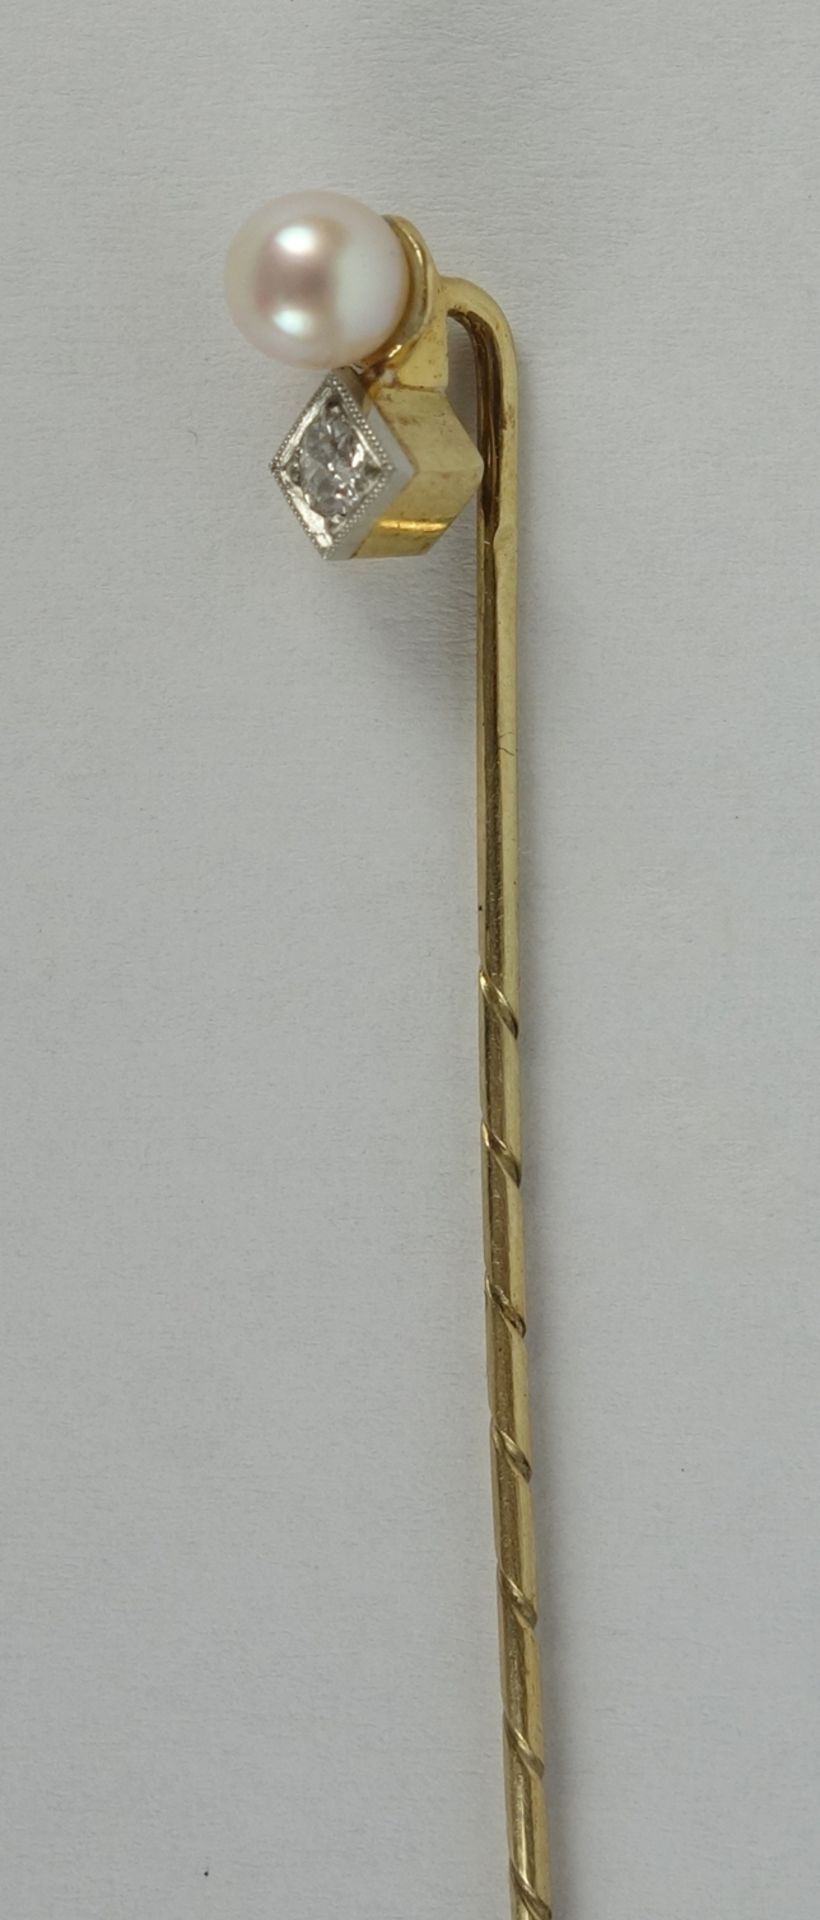 Nadel mit Perle und Diamant-Brillant, 585er Gelbgold, Gew.1,61g - Bild 2 aus 2